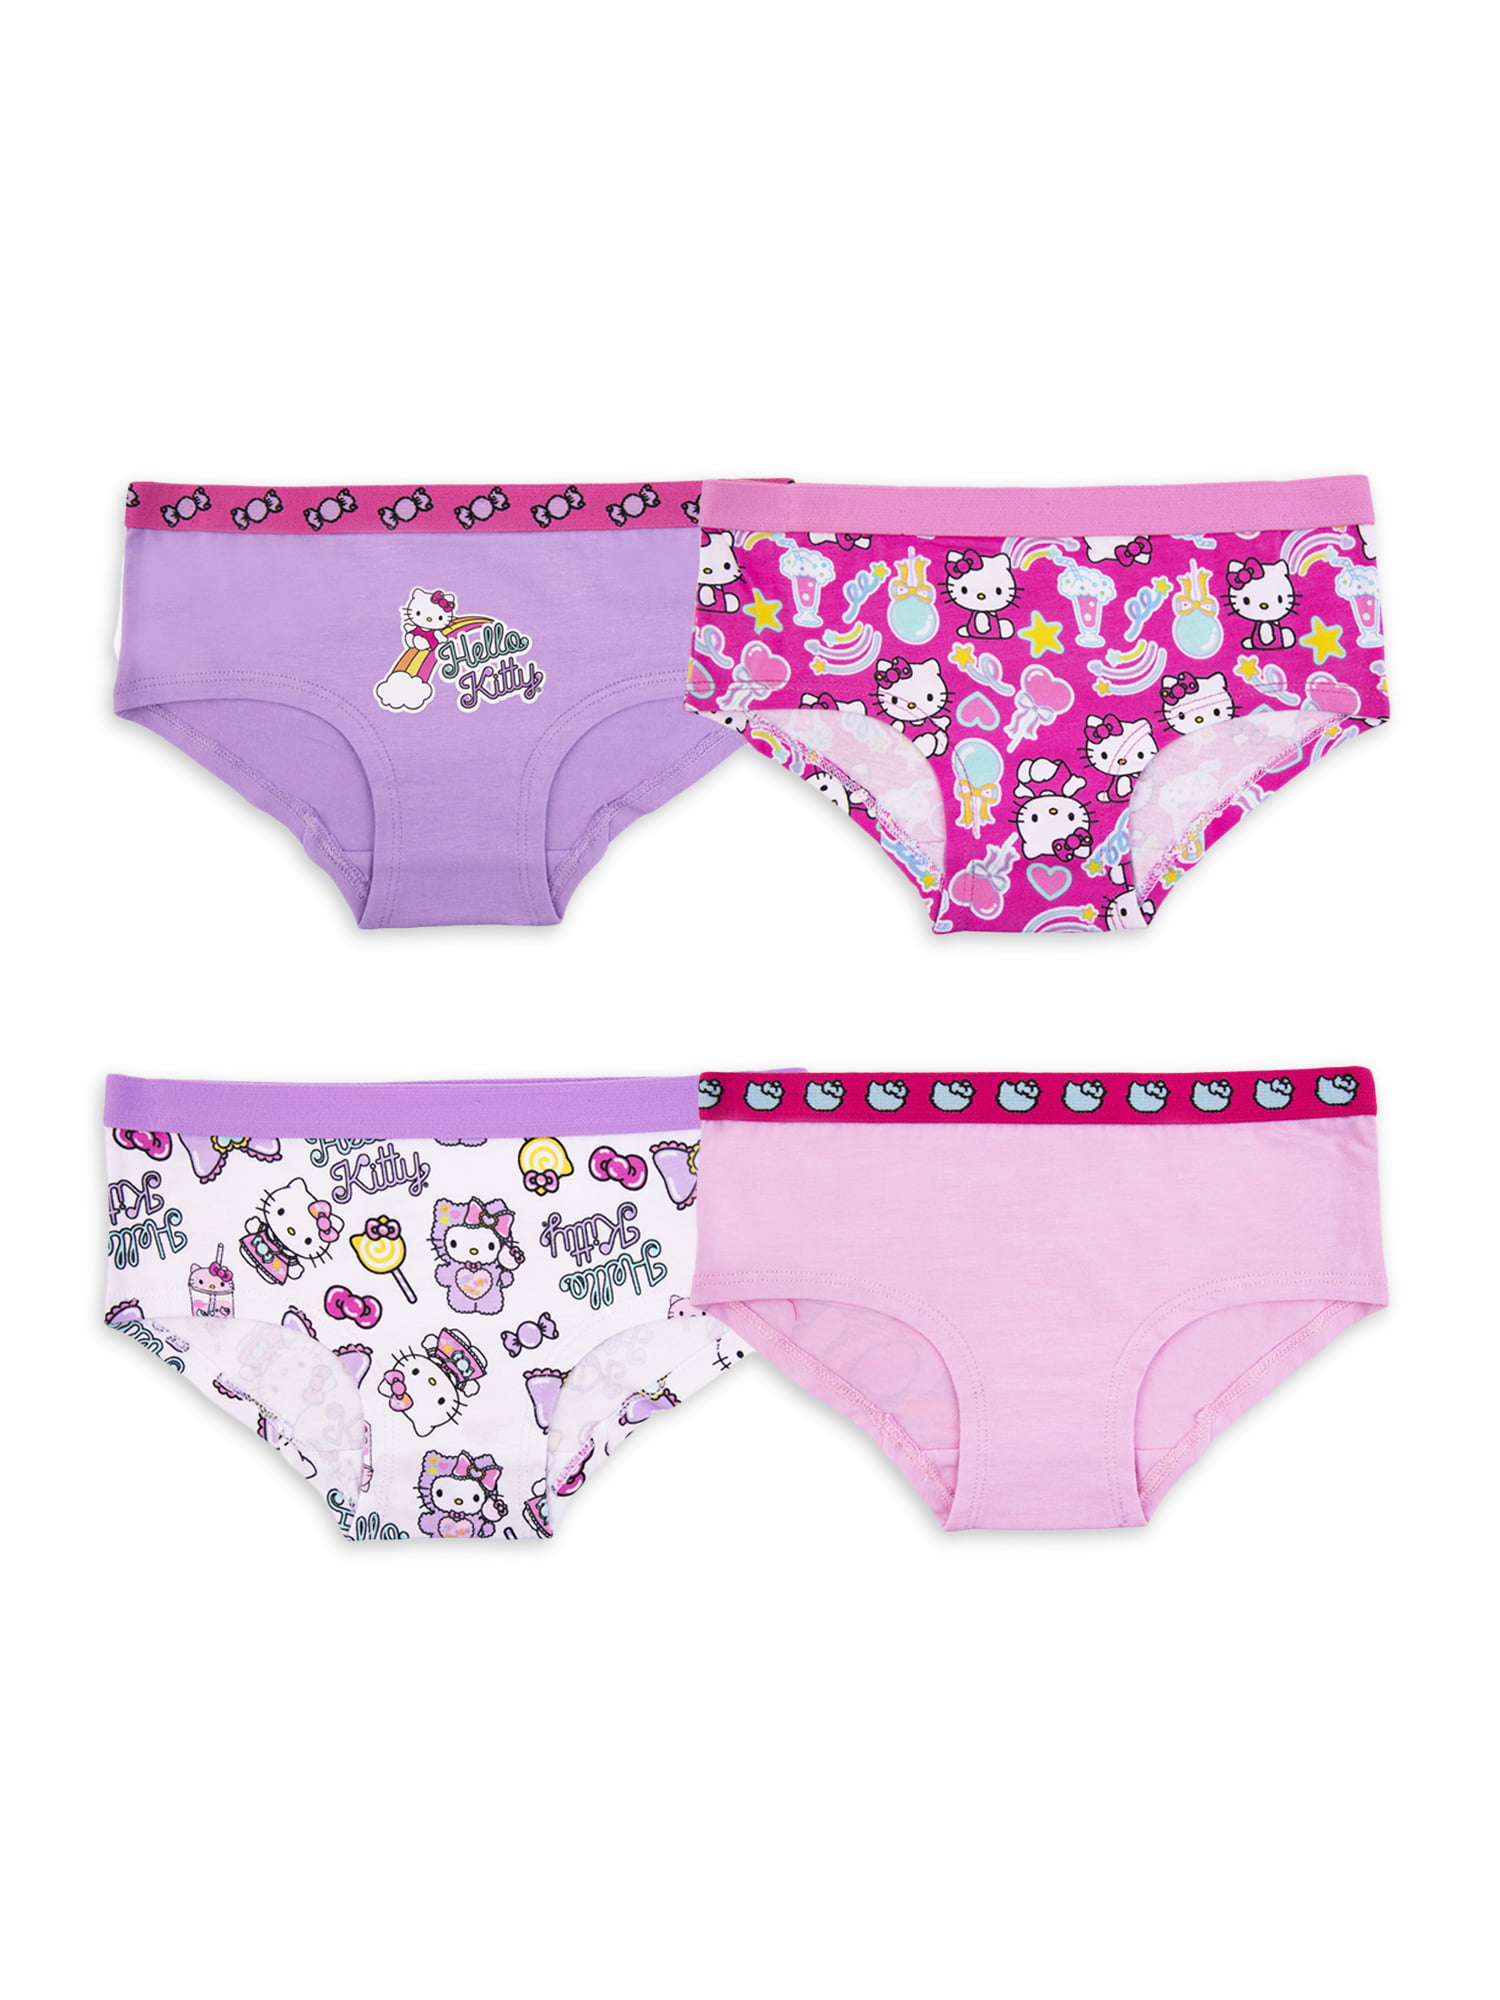 Girls Bikini Underwear Stretchy Hello Kitty All-print Panties Briefs  Assorted Children Inner wear 4-Pack Junior Kids Baby 2-10Y - AliExpress